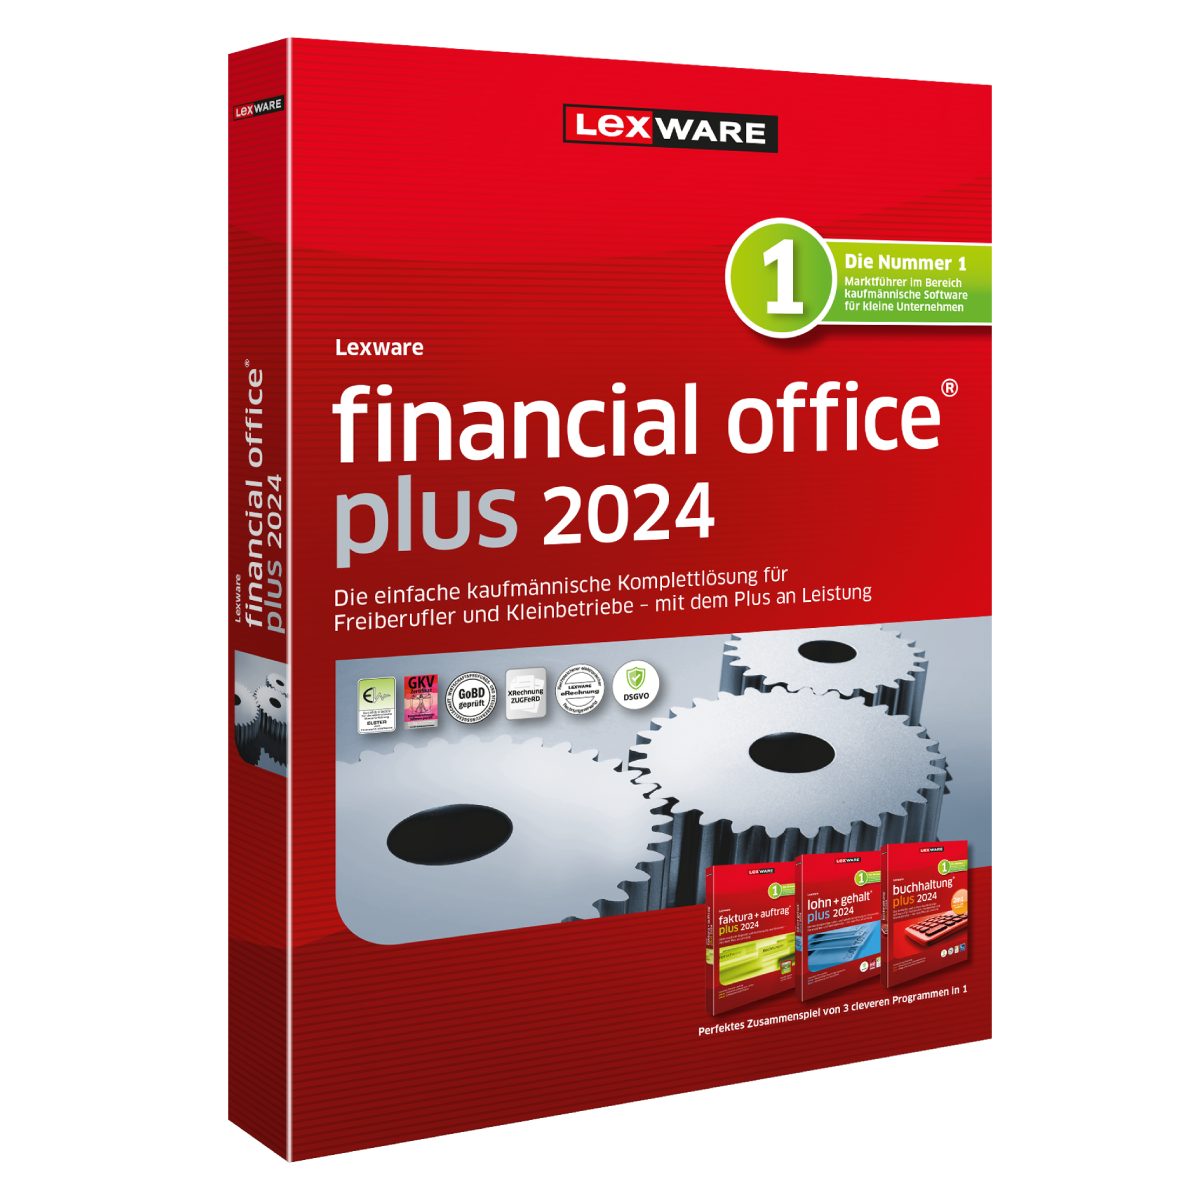 Lexware financial office plus 2024 - Abo von Lexware